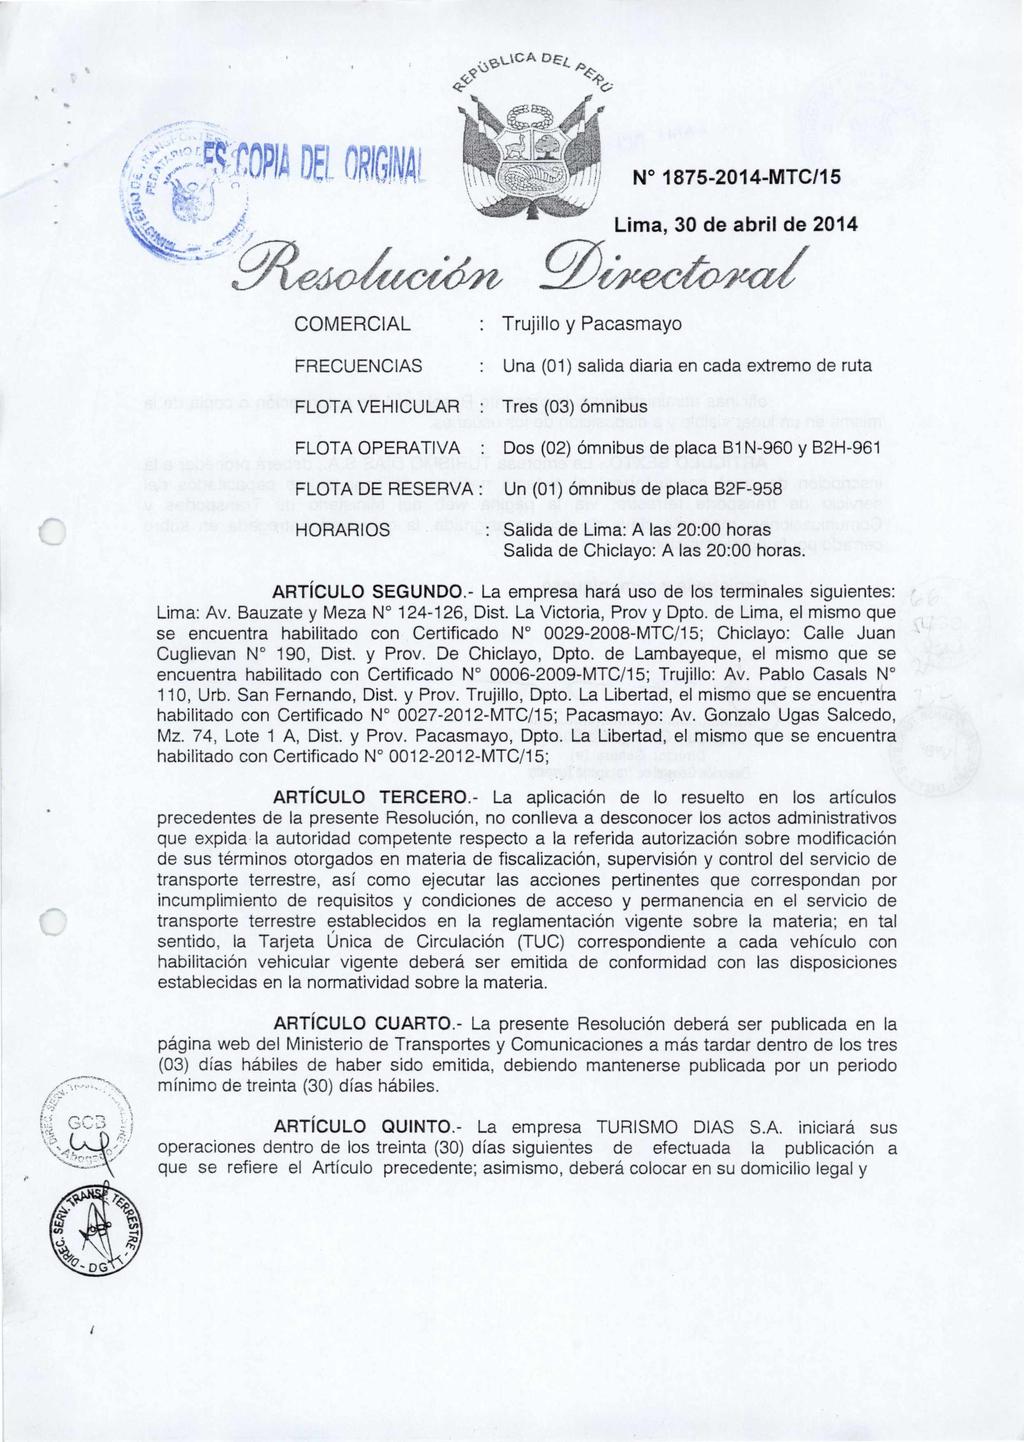 ` ell r I ofi ormi \kk COMERCIAL FRECUENCIAS N 1875-2014-MTC/15 Lima, 30 de abril de 2014.